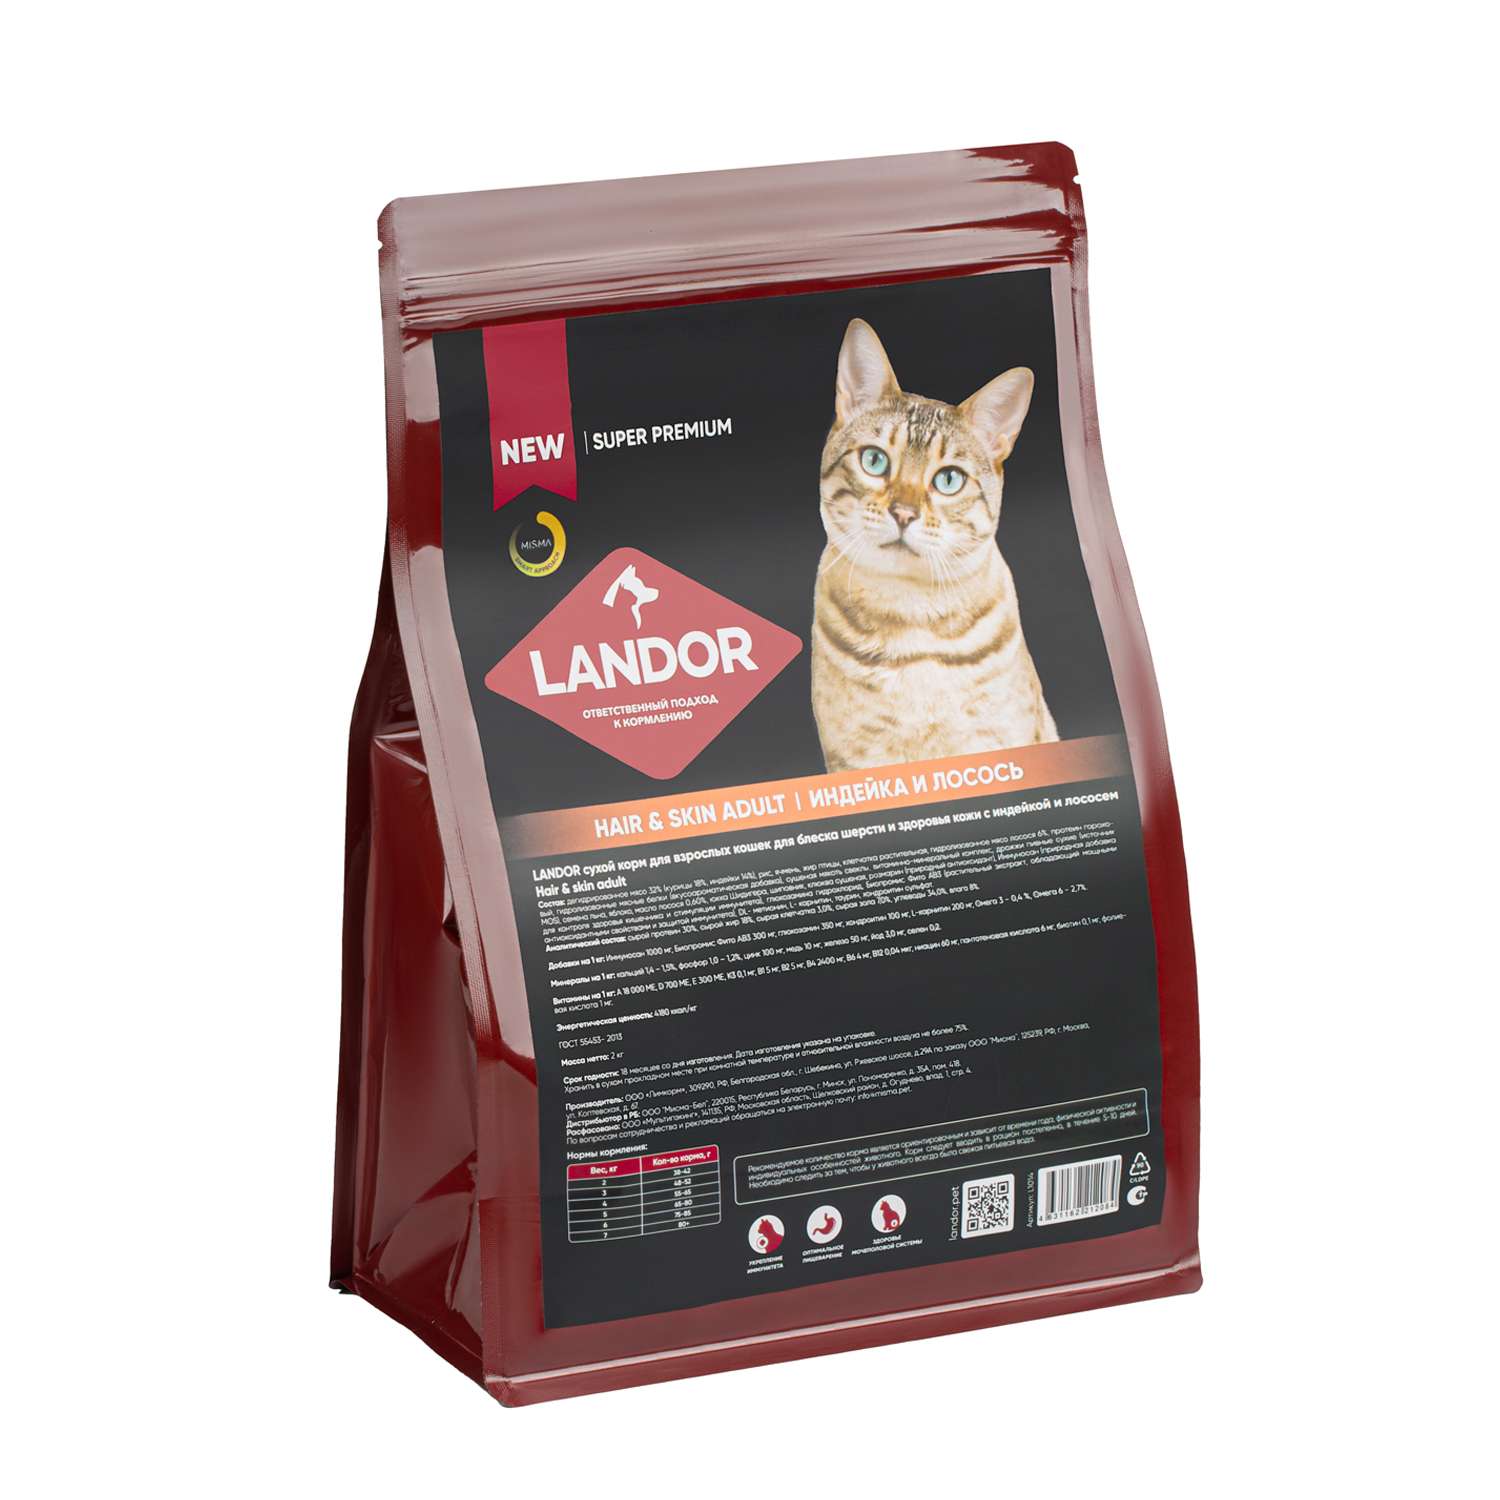 Корм для кошек Landor 2кг для шерсти и здоровья кожи c индейкой и лососем сухой - фото 2